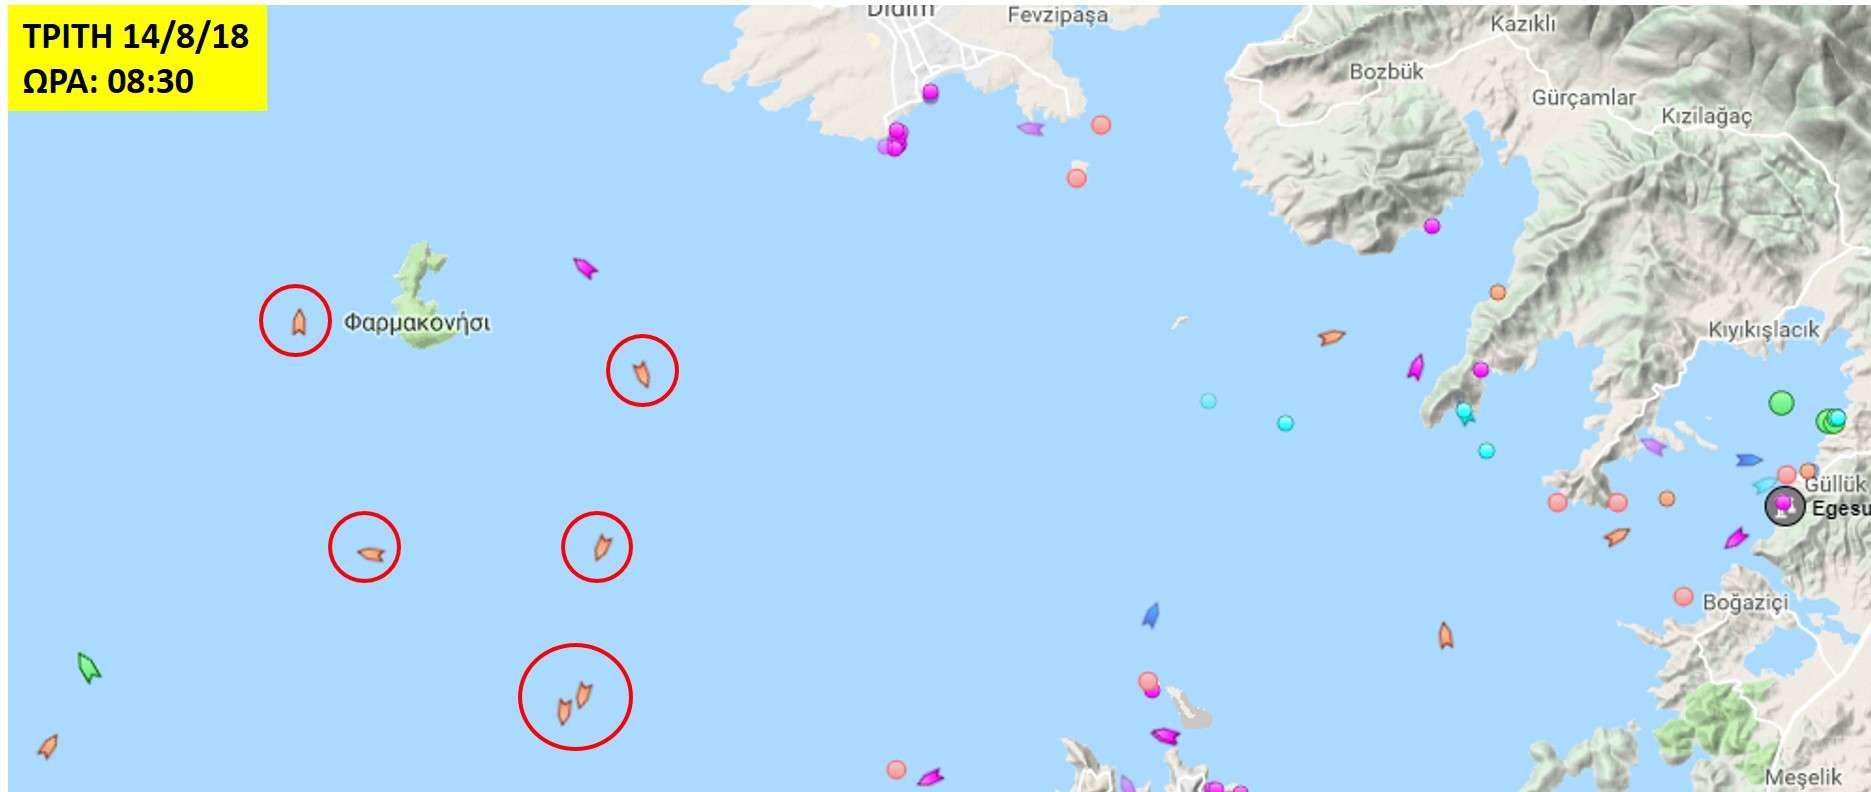 Ο τουρκικός ναυτικός αποκλεισμός με ψαροκάϊκα συνεχίζεται! Τι γίνεται στο Φαρμακονήσι